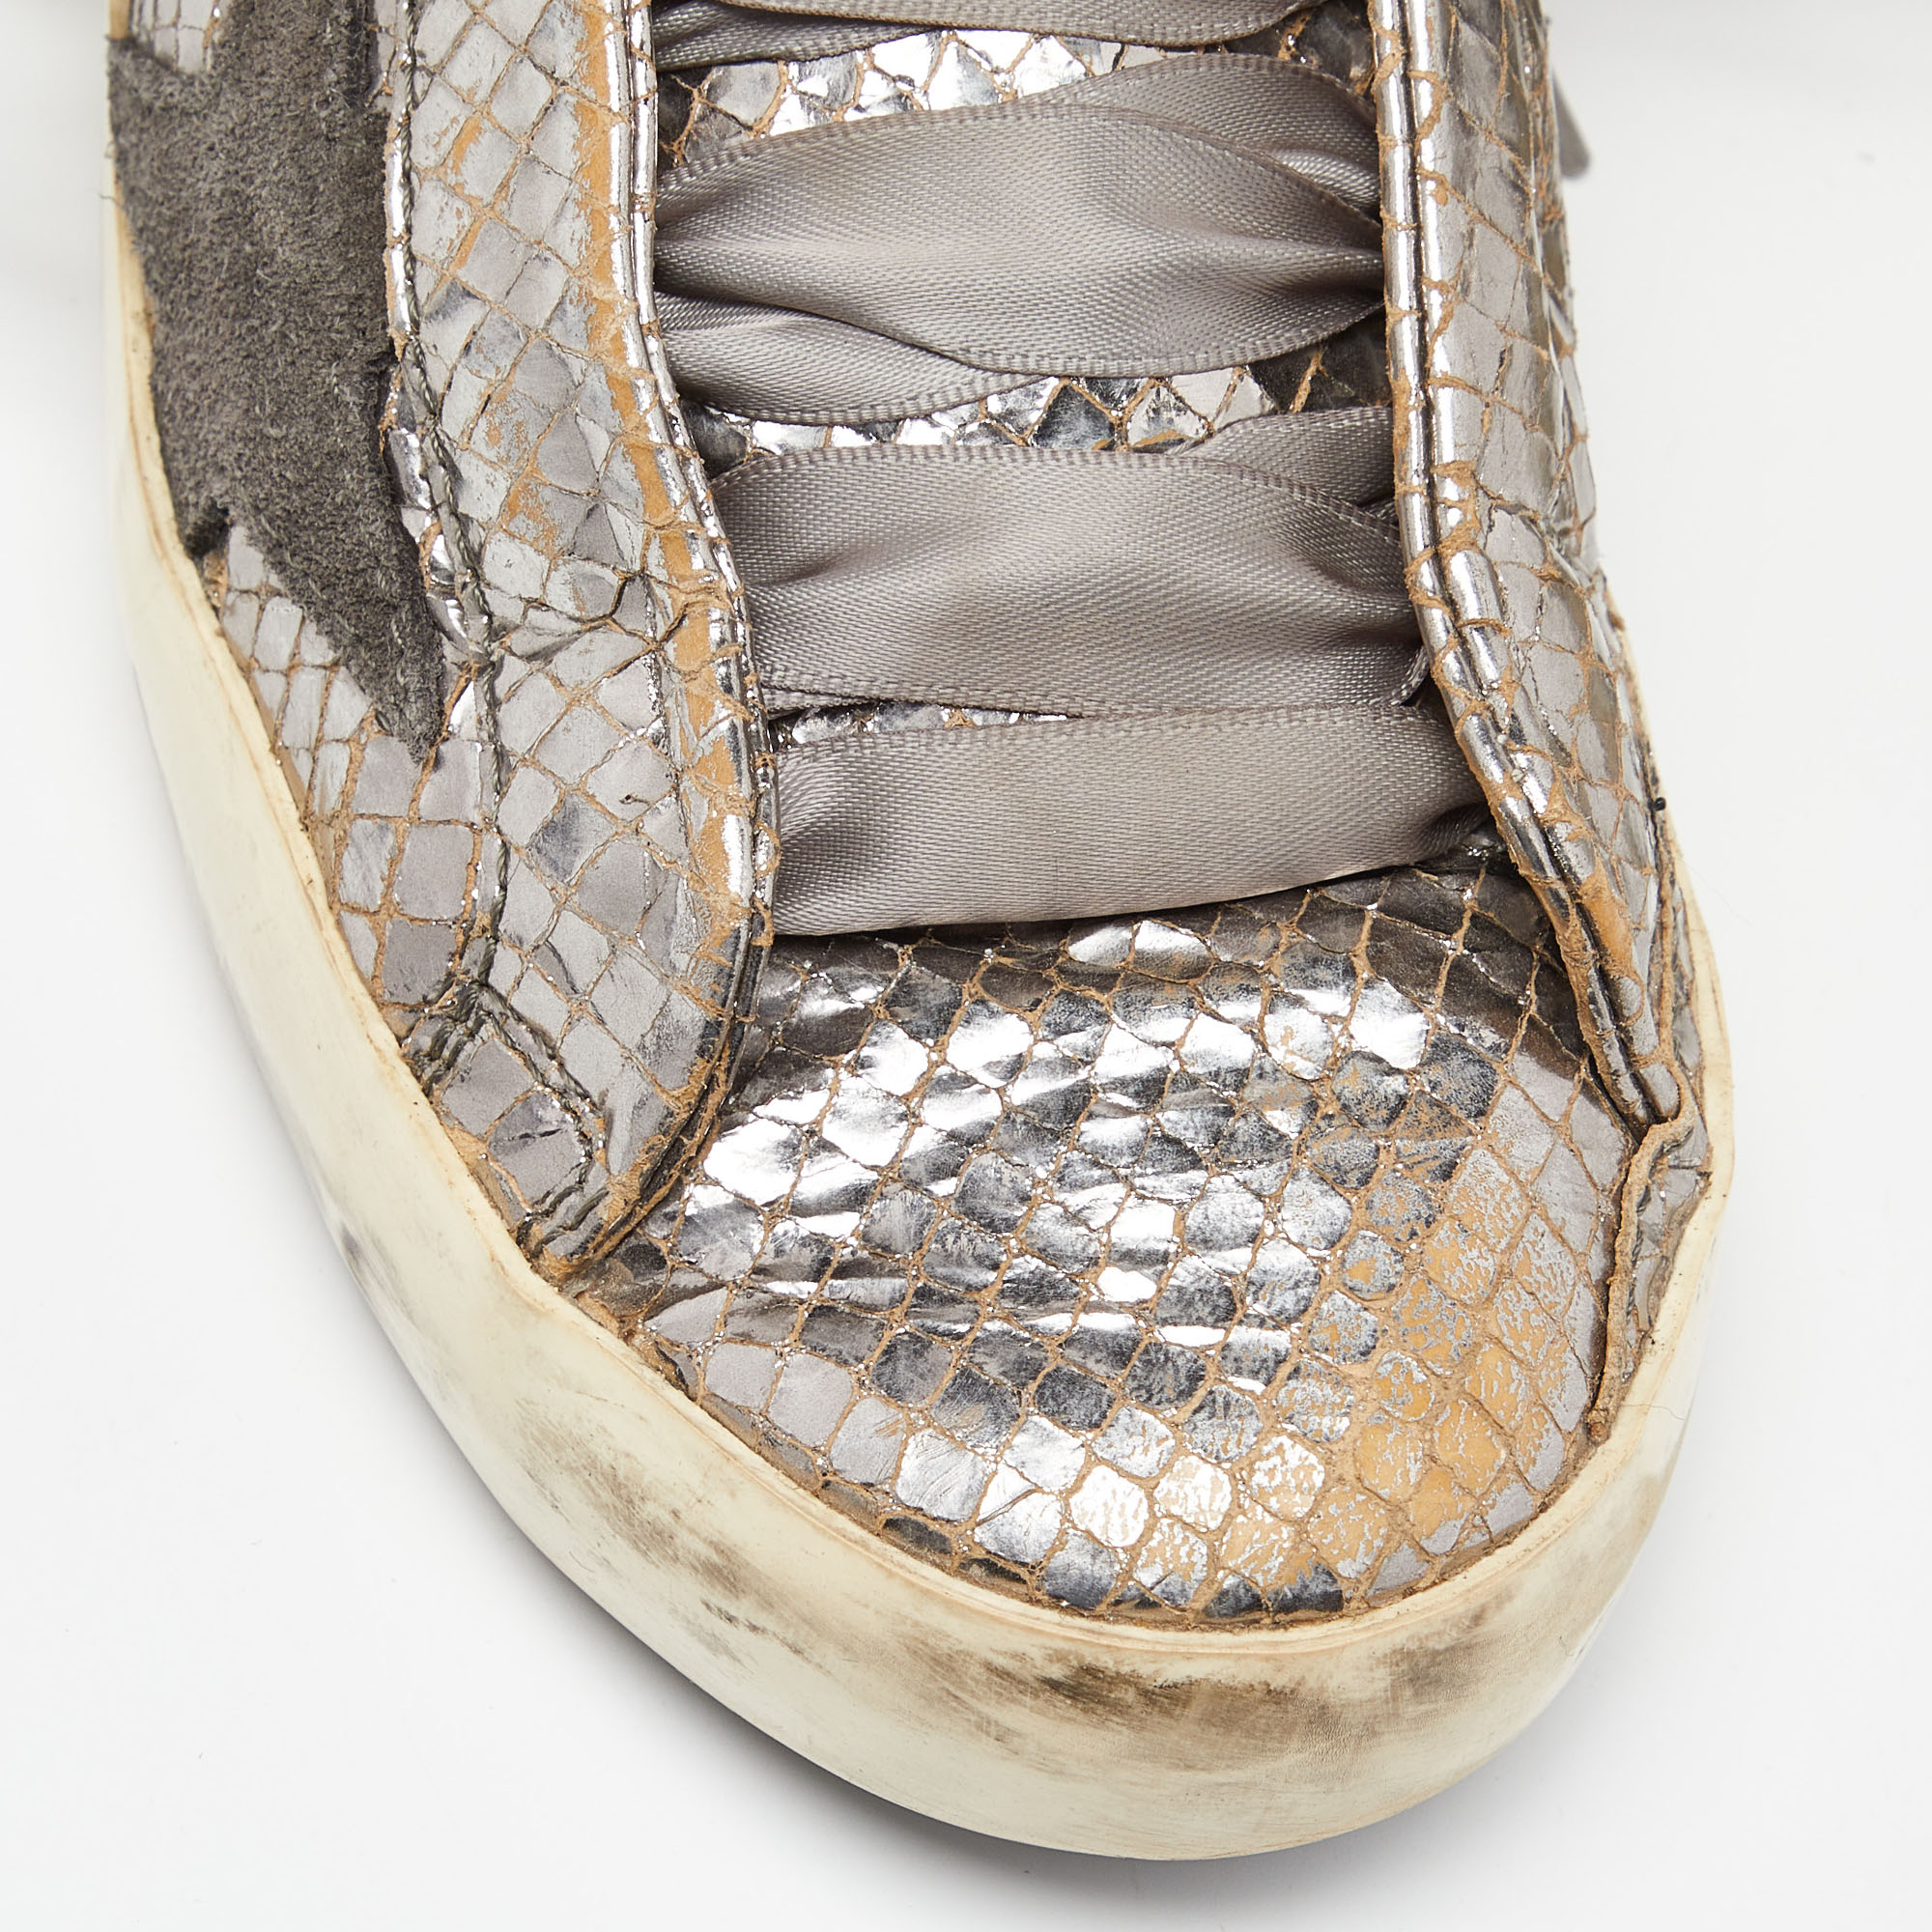 Golden Goose Metallic Silver Suede Superstar Low Top Sneakers Size 37